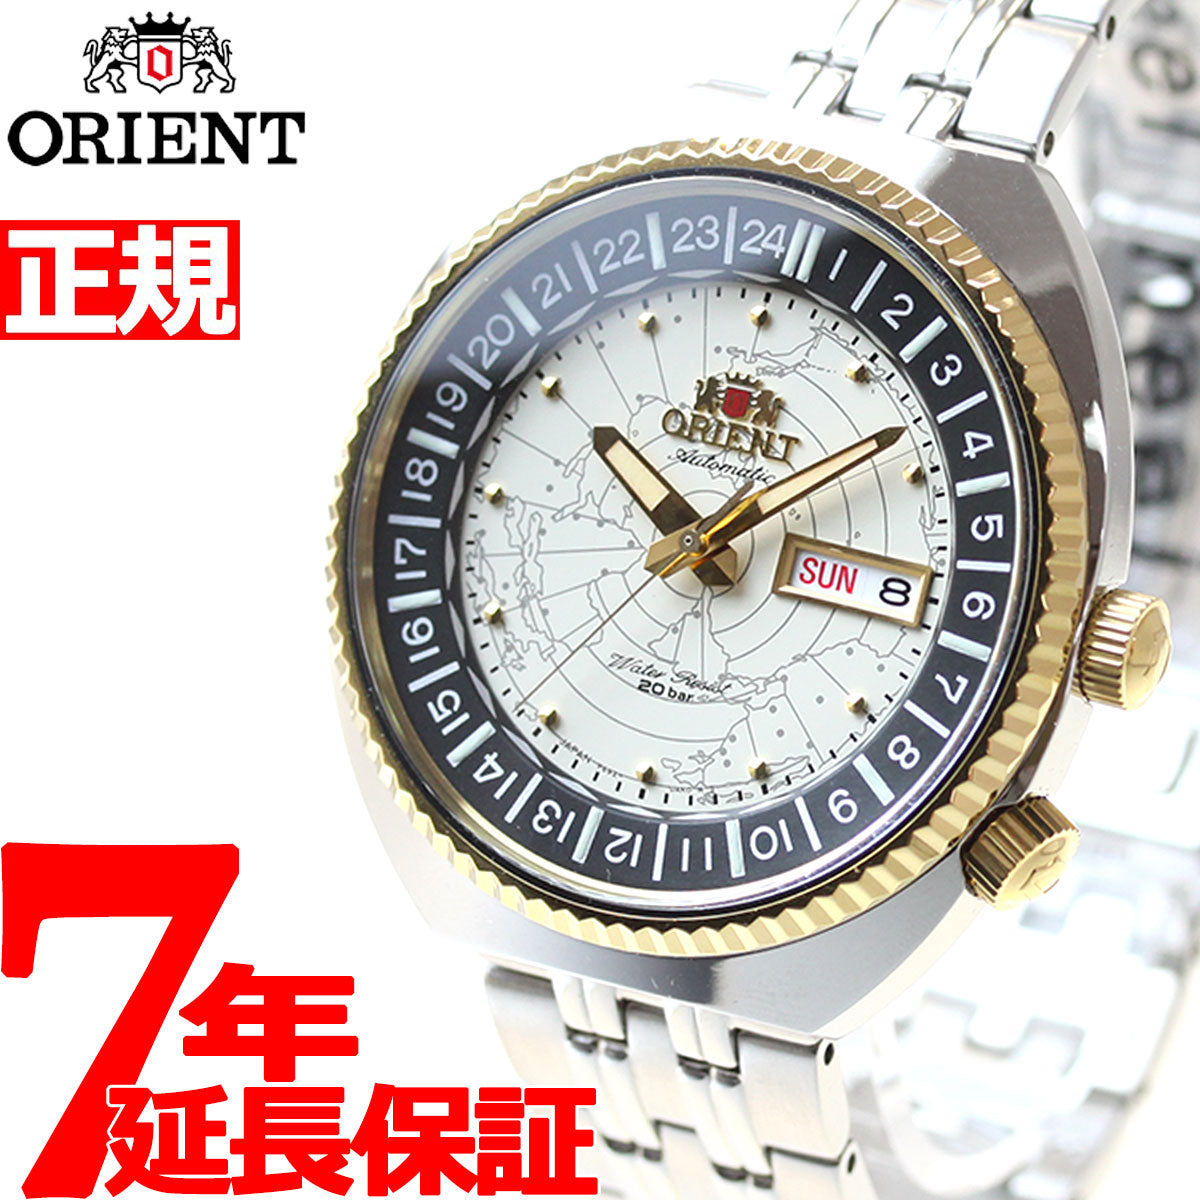 Orient 腕時計